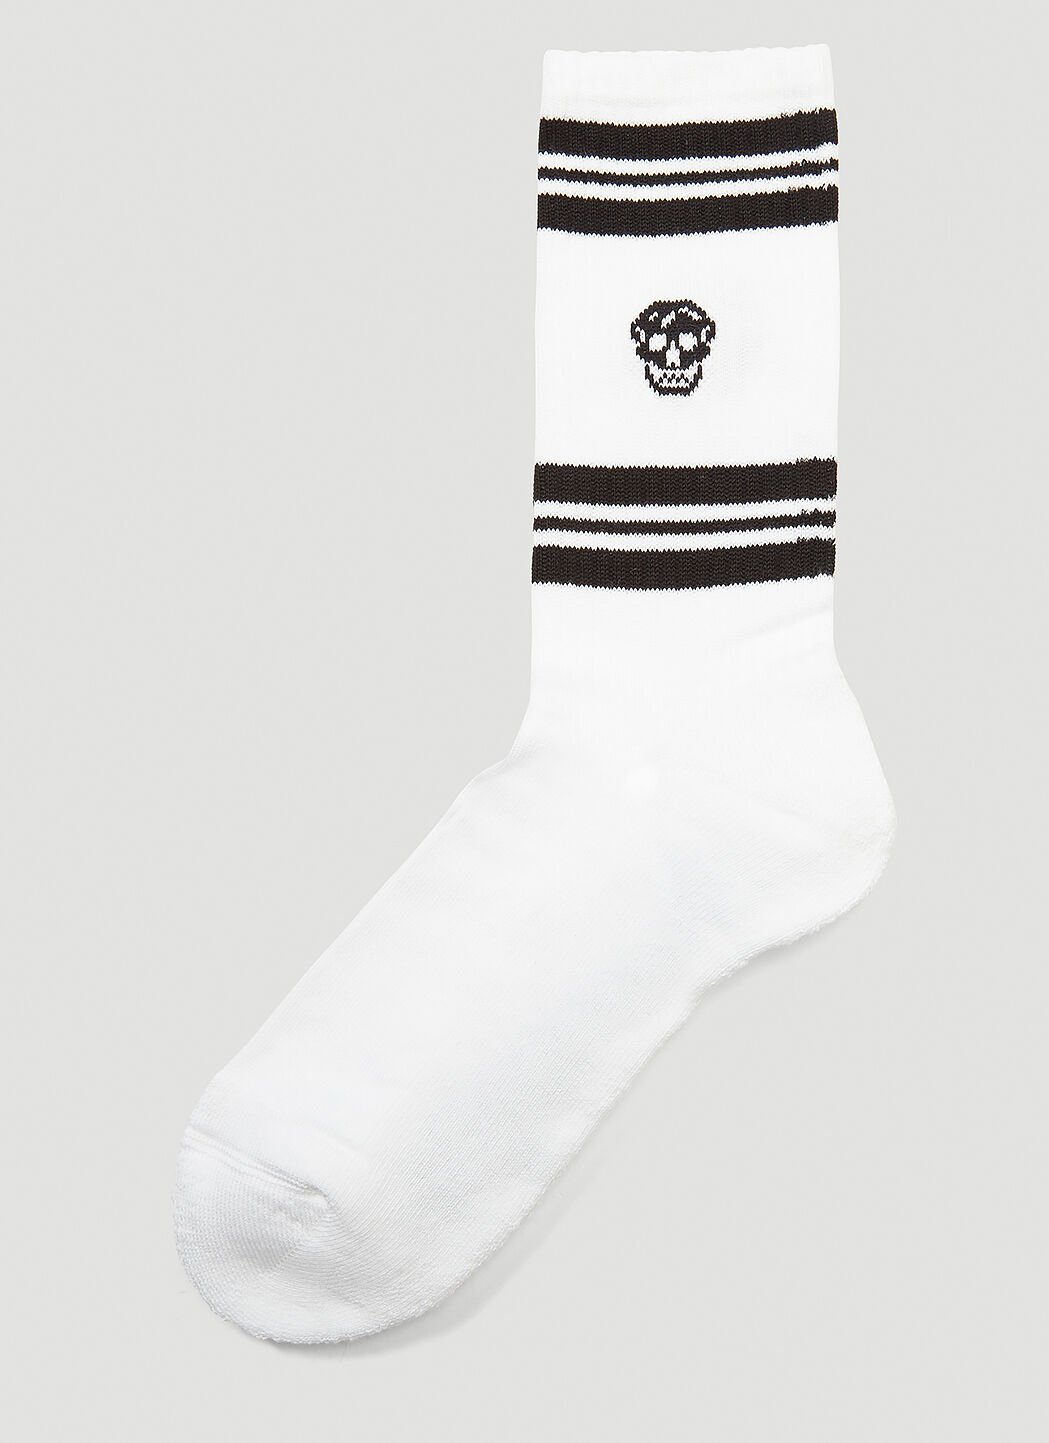 Alexander McQueen Skull Socks Black amq0152016